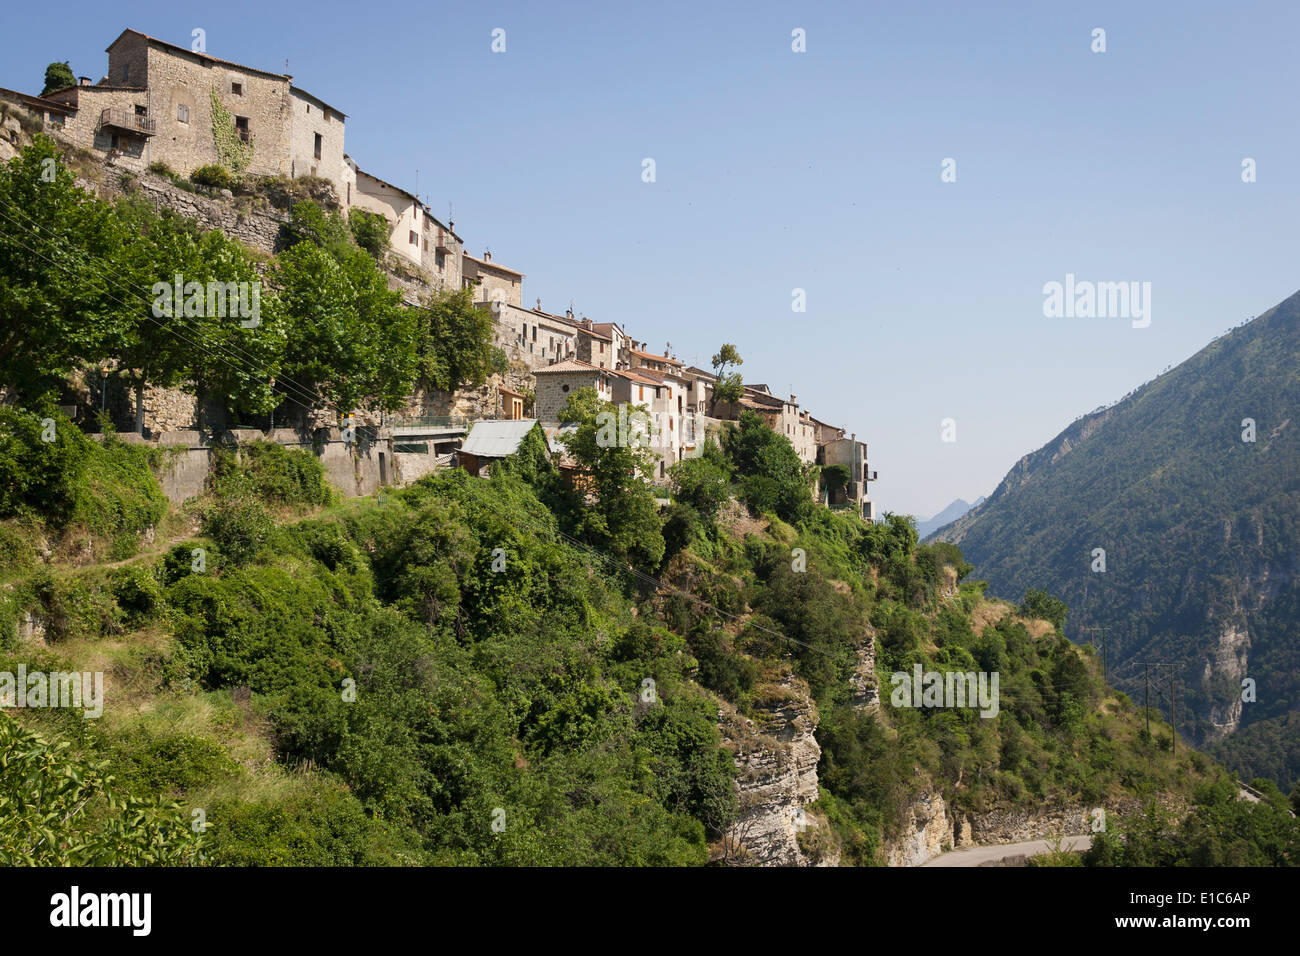 Village de montagne, France - Thiéry dans les Alpes-Maritimes Banque D'Images